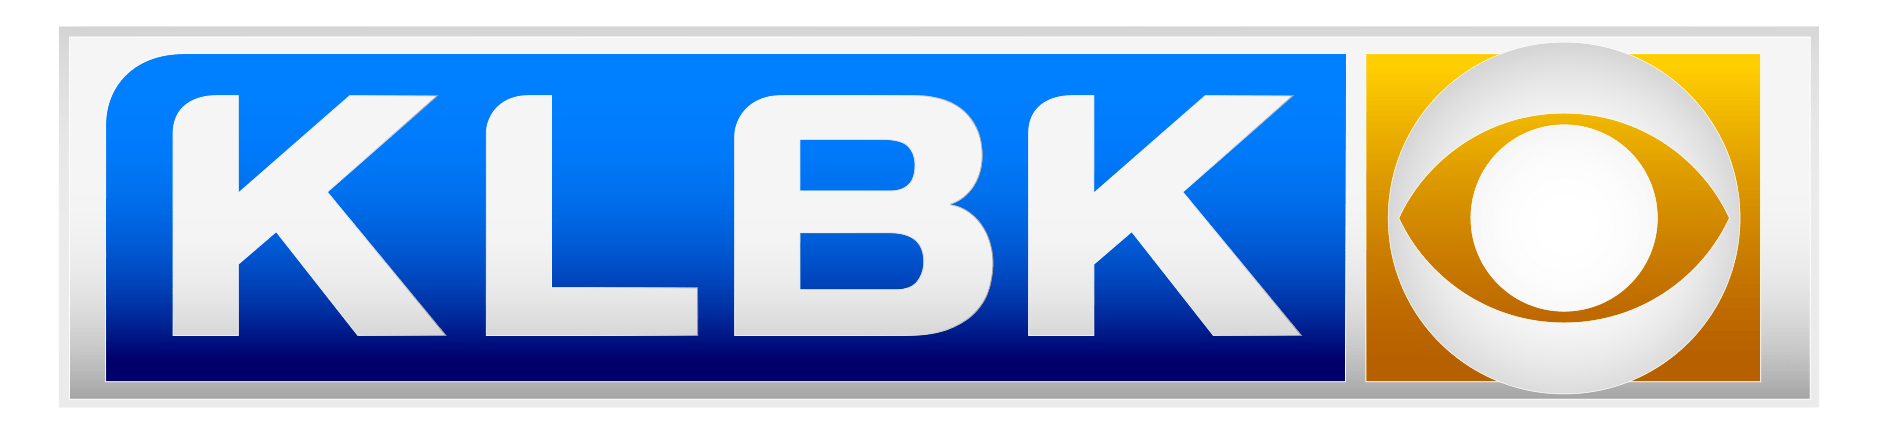 KLBK Channel 13